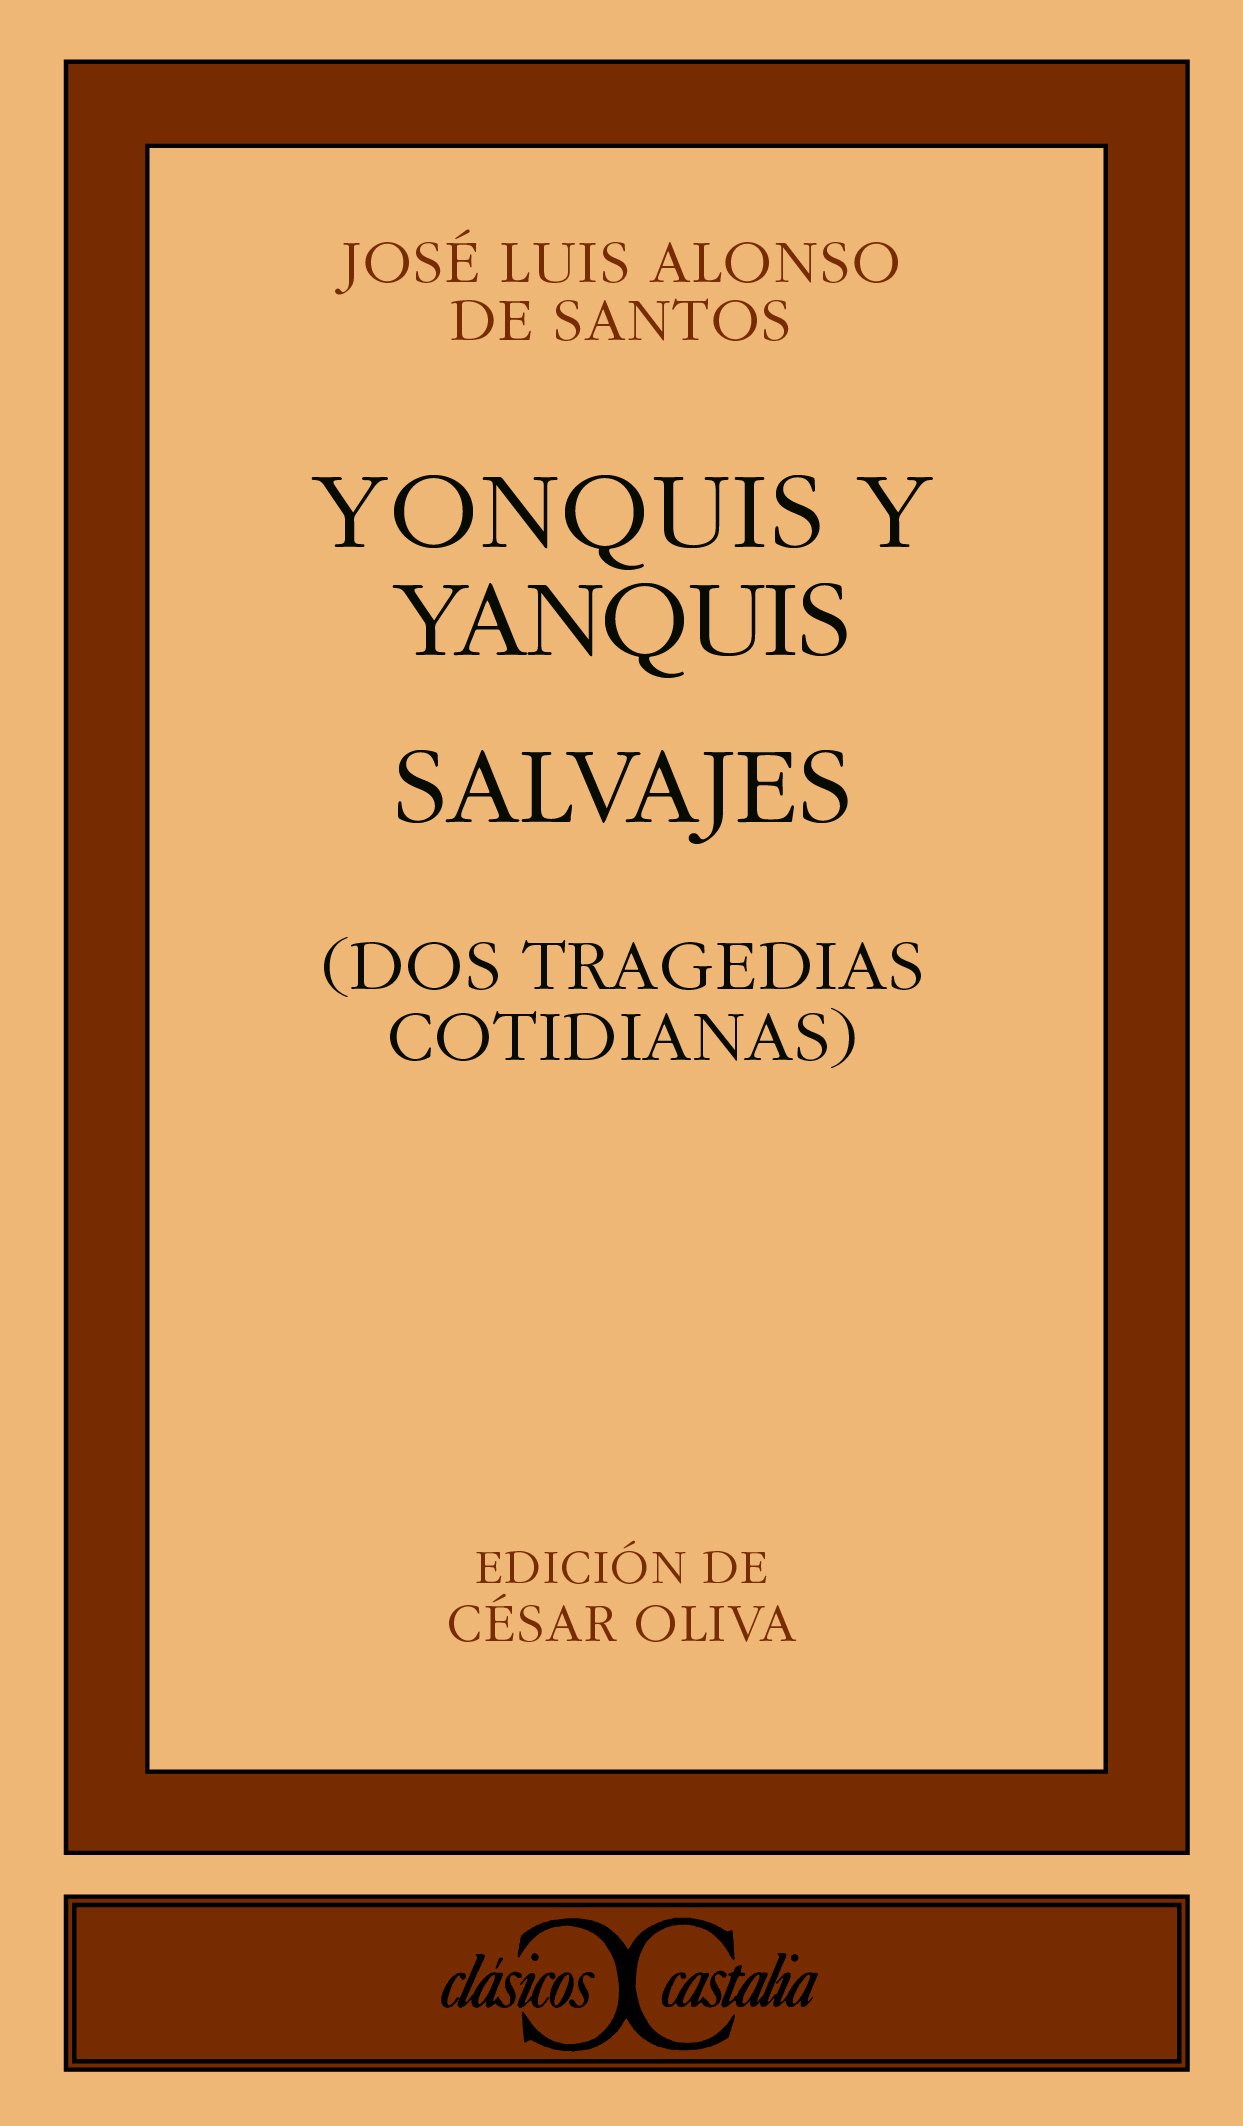 Imagen de portada del libro Yonquis y yanquis. Salvajes. Dos tragedias cotidianas